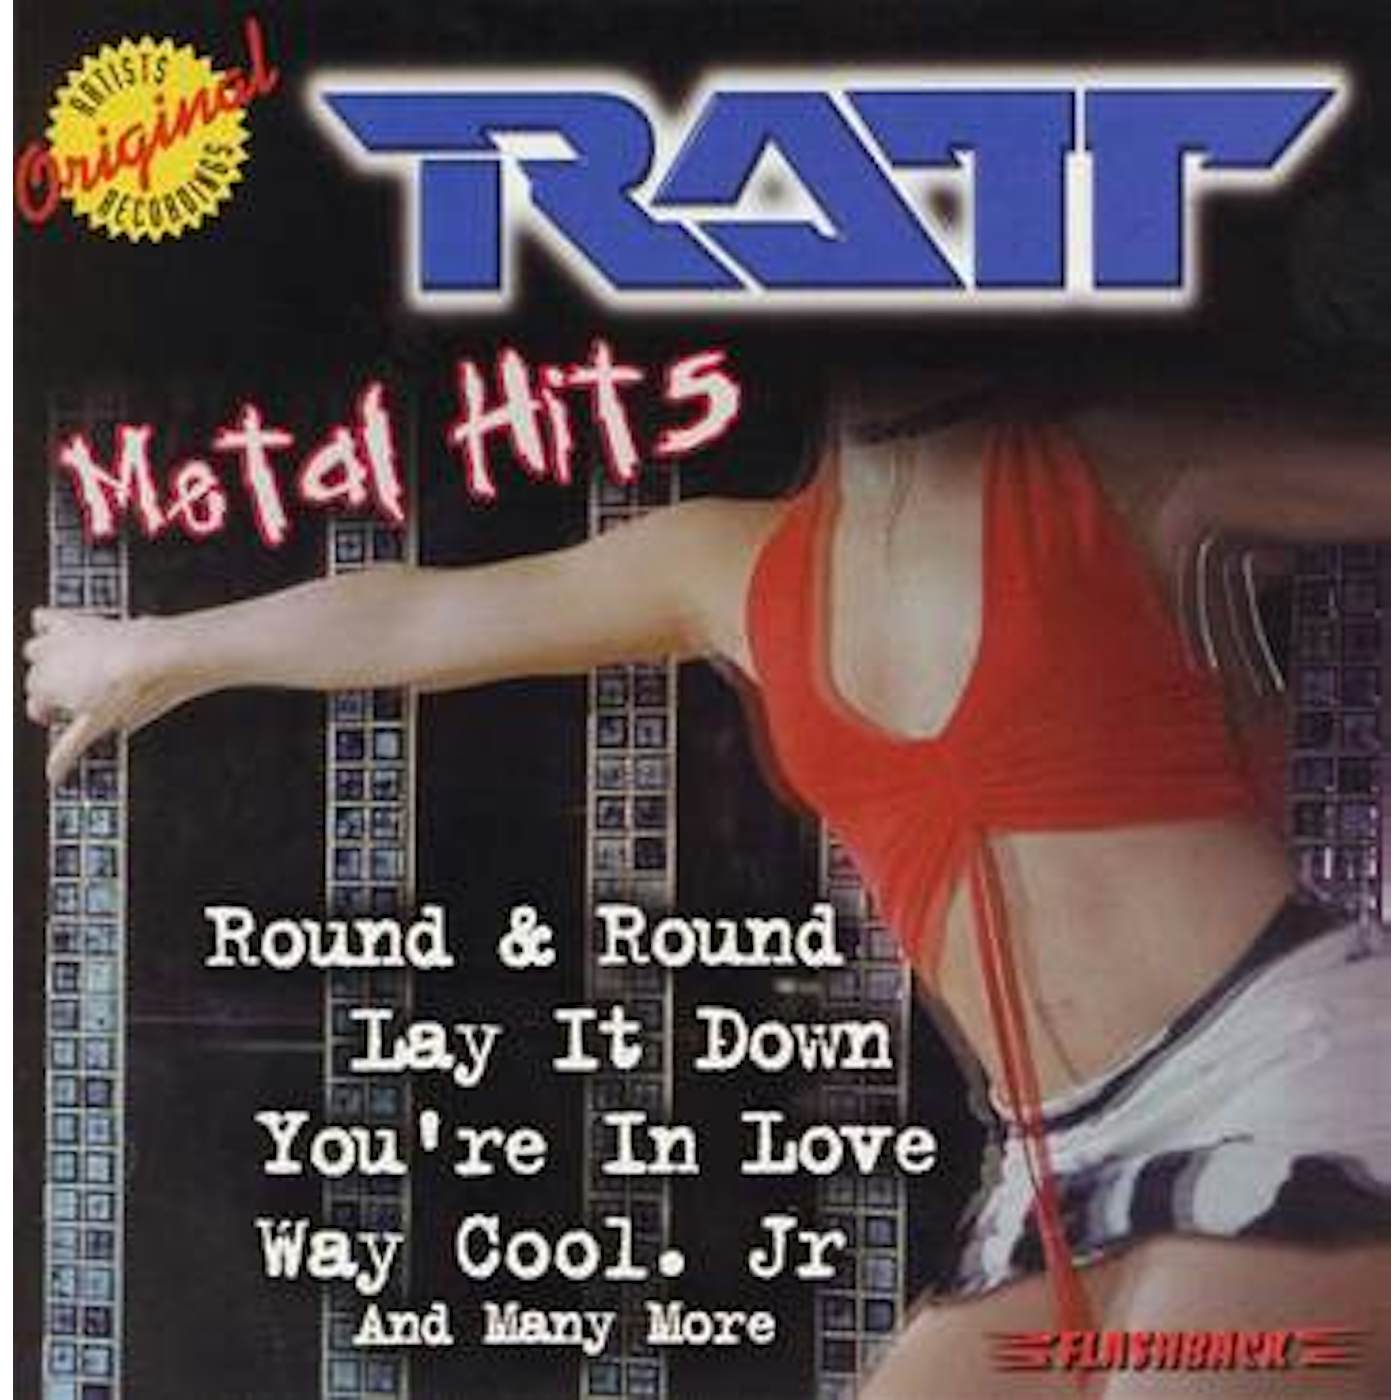 Ratt METAL HITS CD